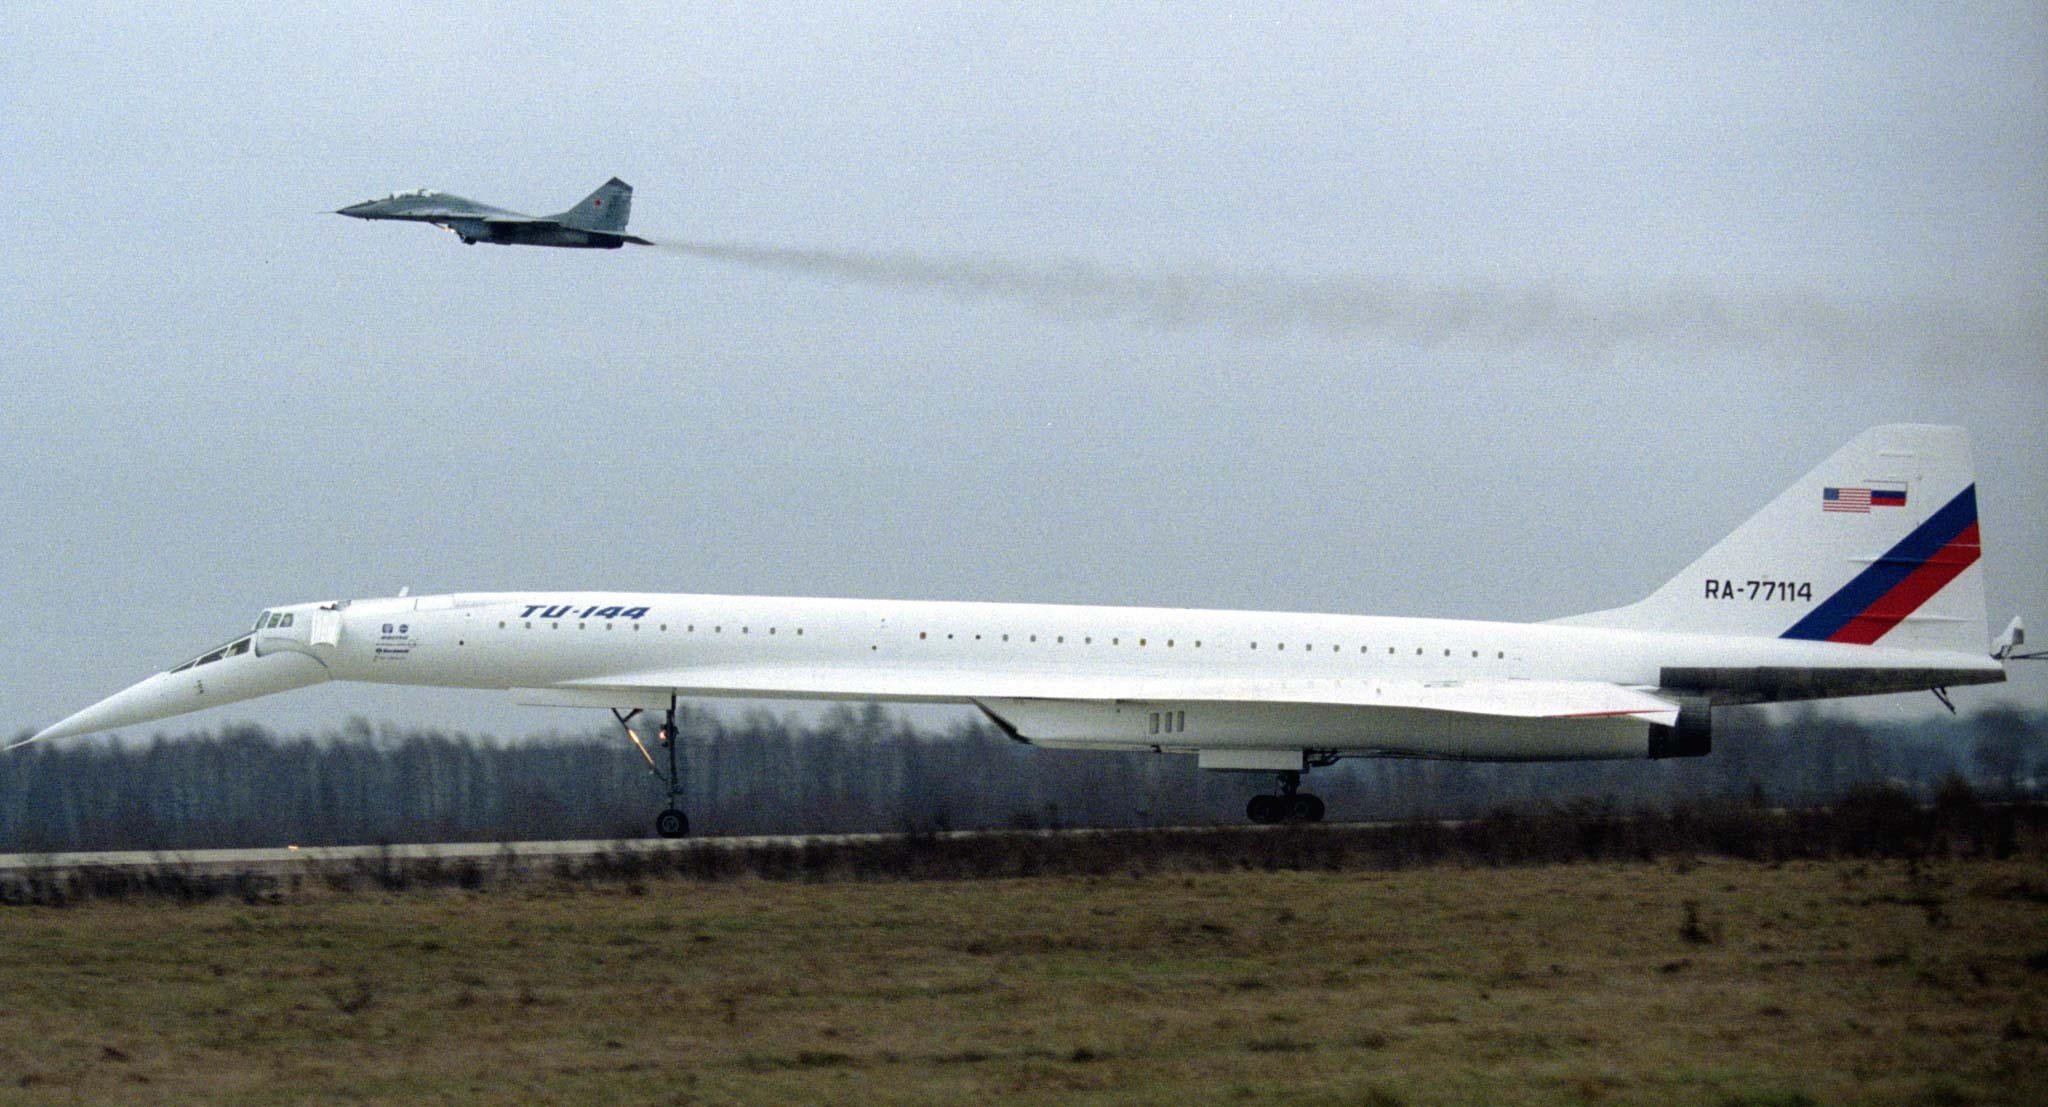 Ein Sitzplatz im Flugzeug soll etwa 2.200 Pfund gekostet haben, da dies der Preis für einen Sitzplatz in der Concorde war